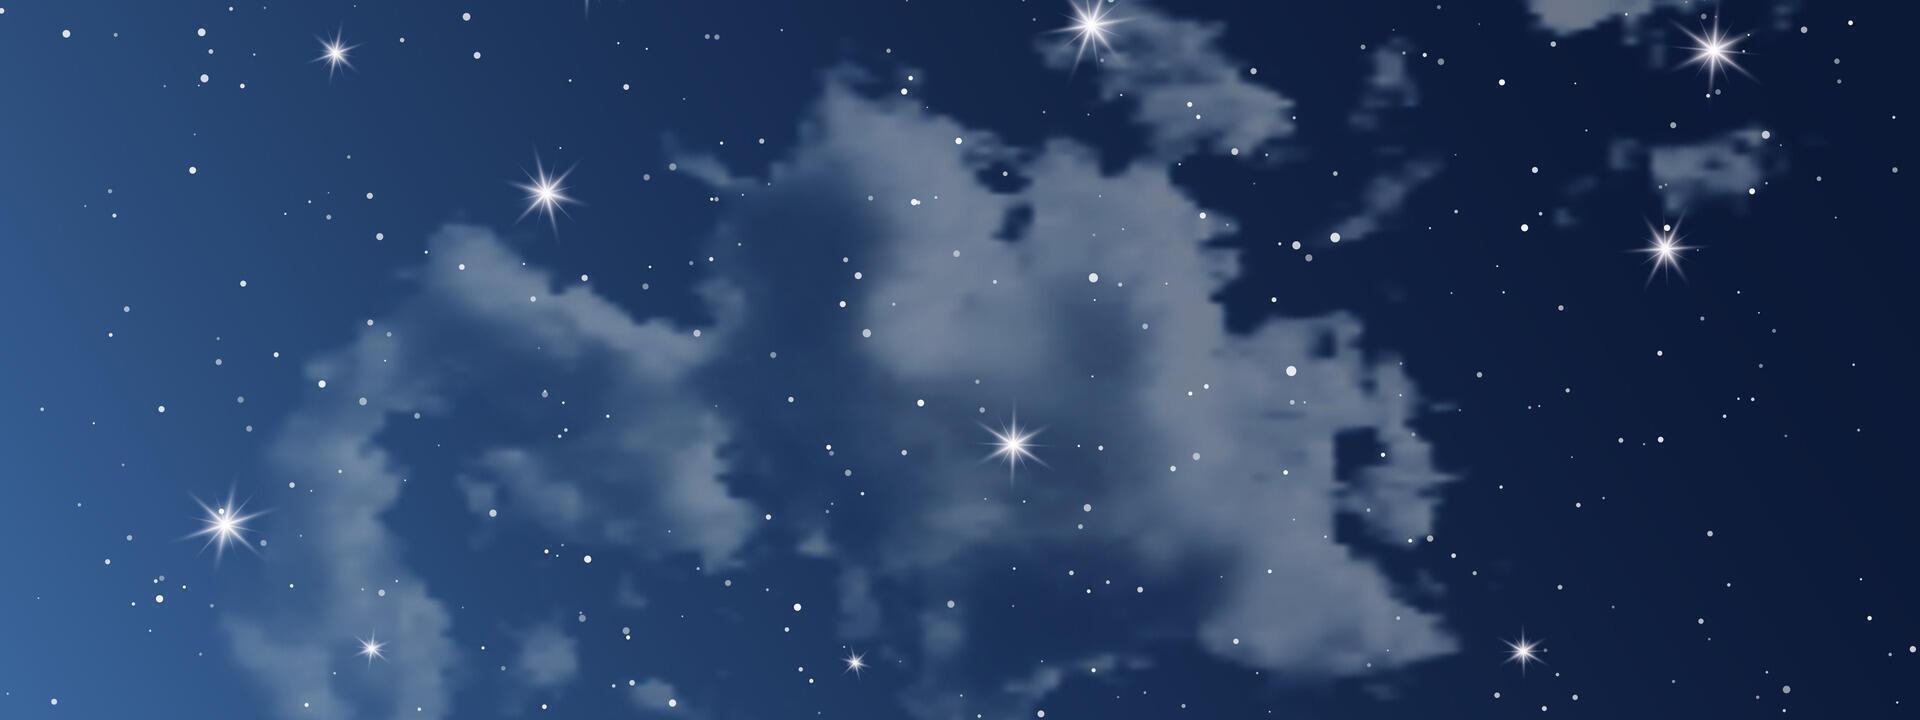 nacht lucht met wolken en veel sterren vector